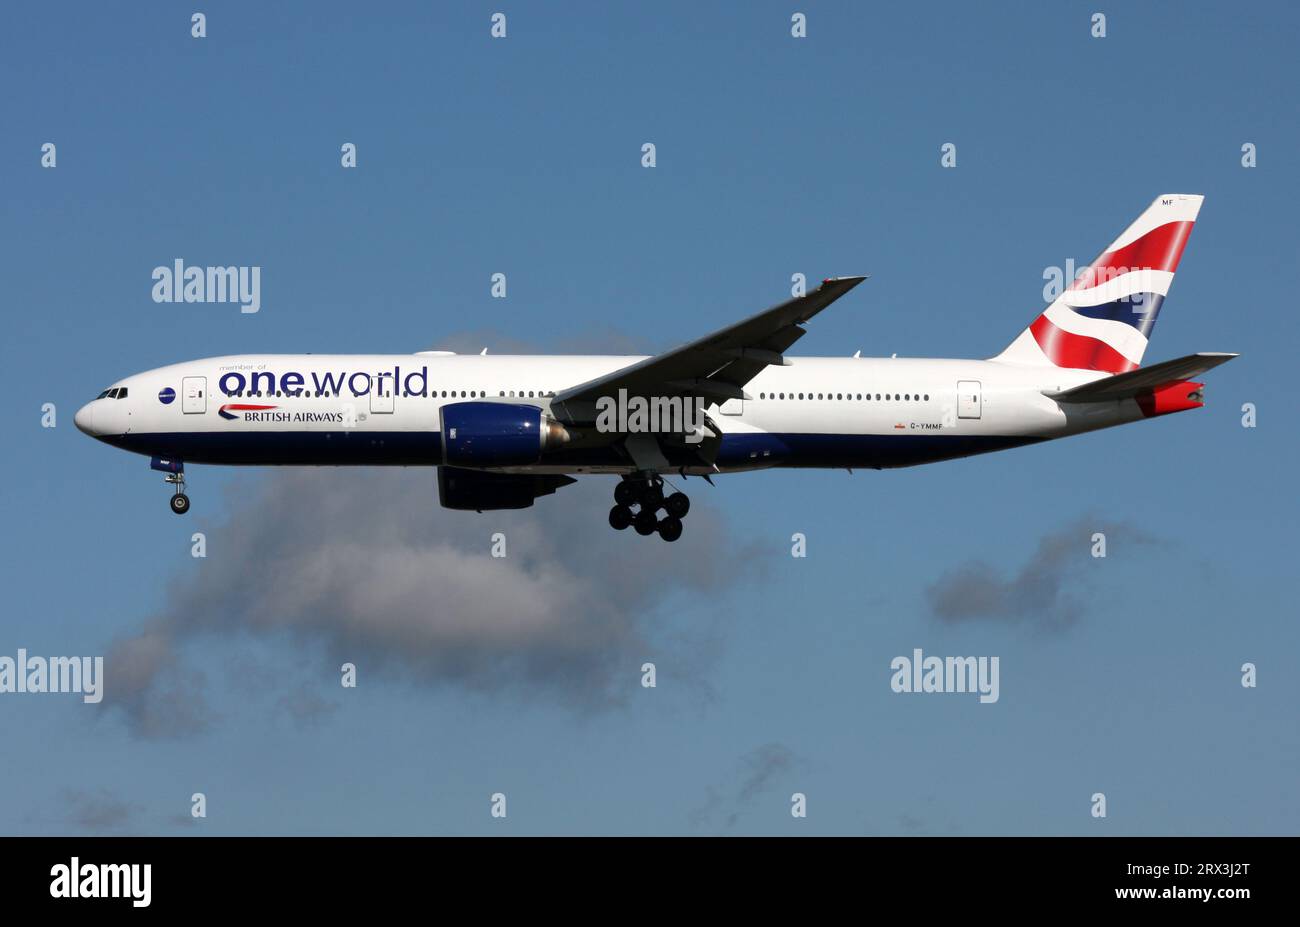 Eine Boeing 777-200 von British Airways, die für die oneworld-Airline-Allianz wirbt, nähert sich dem Flughafen London Gatwick Stockfoto